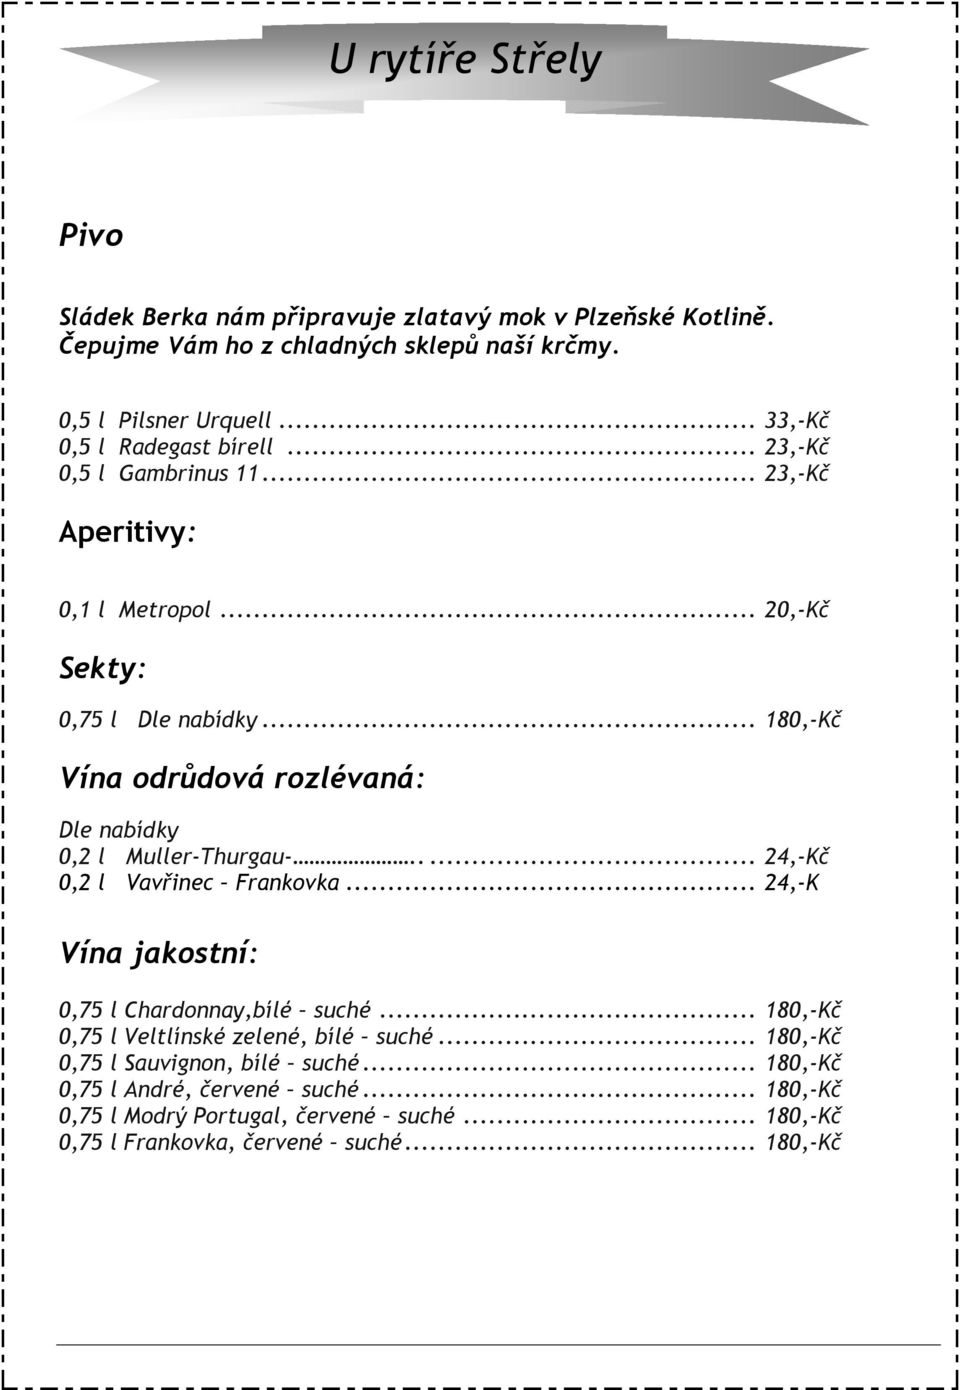 .. 180,-Kč Vína odrůdová rozlévaná: Dle nabídky 0,2 l Muller-Thurgau-..... 24,-Kč 0,2 l Vavřinec Frankovka... 24,-K Vína jakostní: 0,75 l Chardonnay,bílé suché.